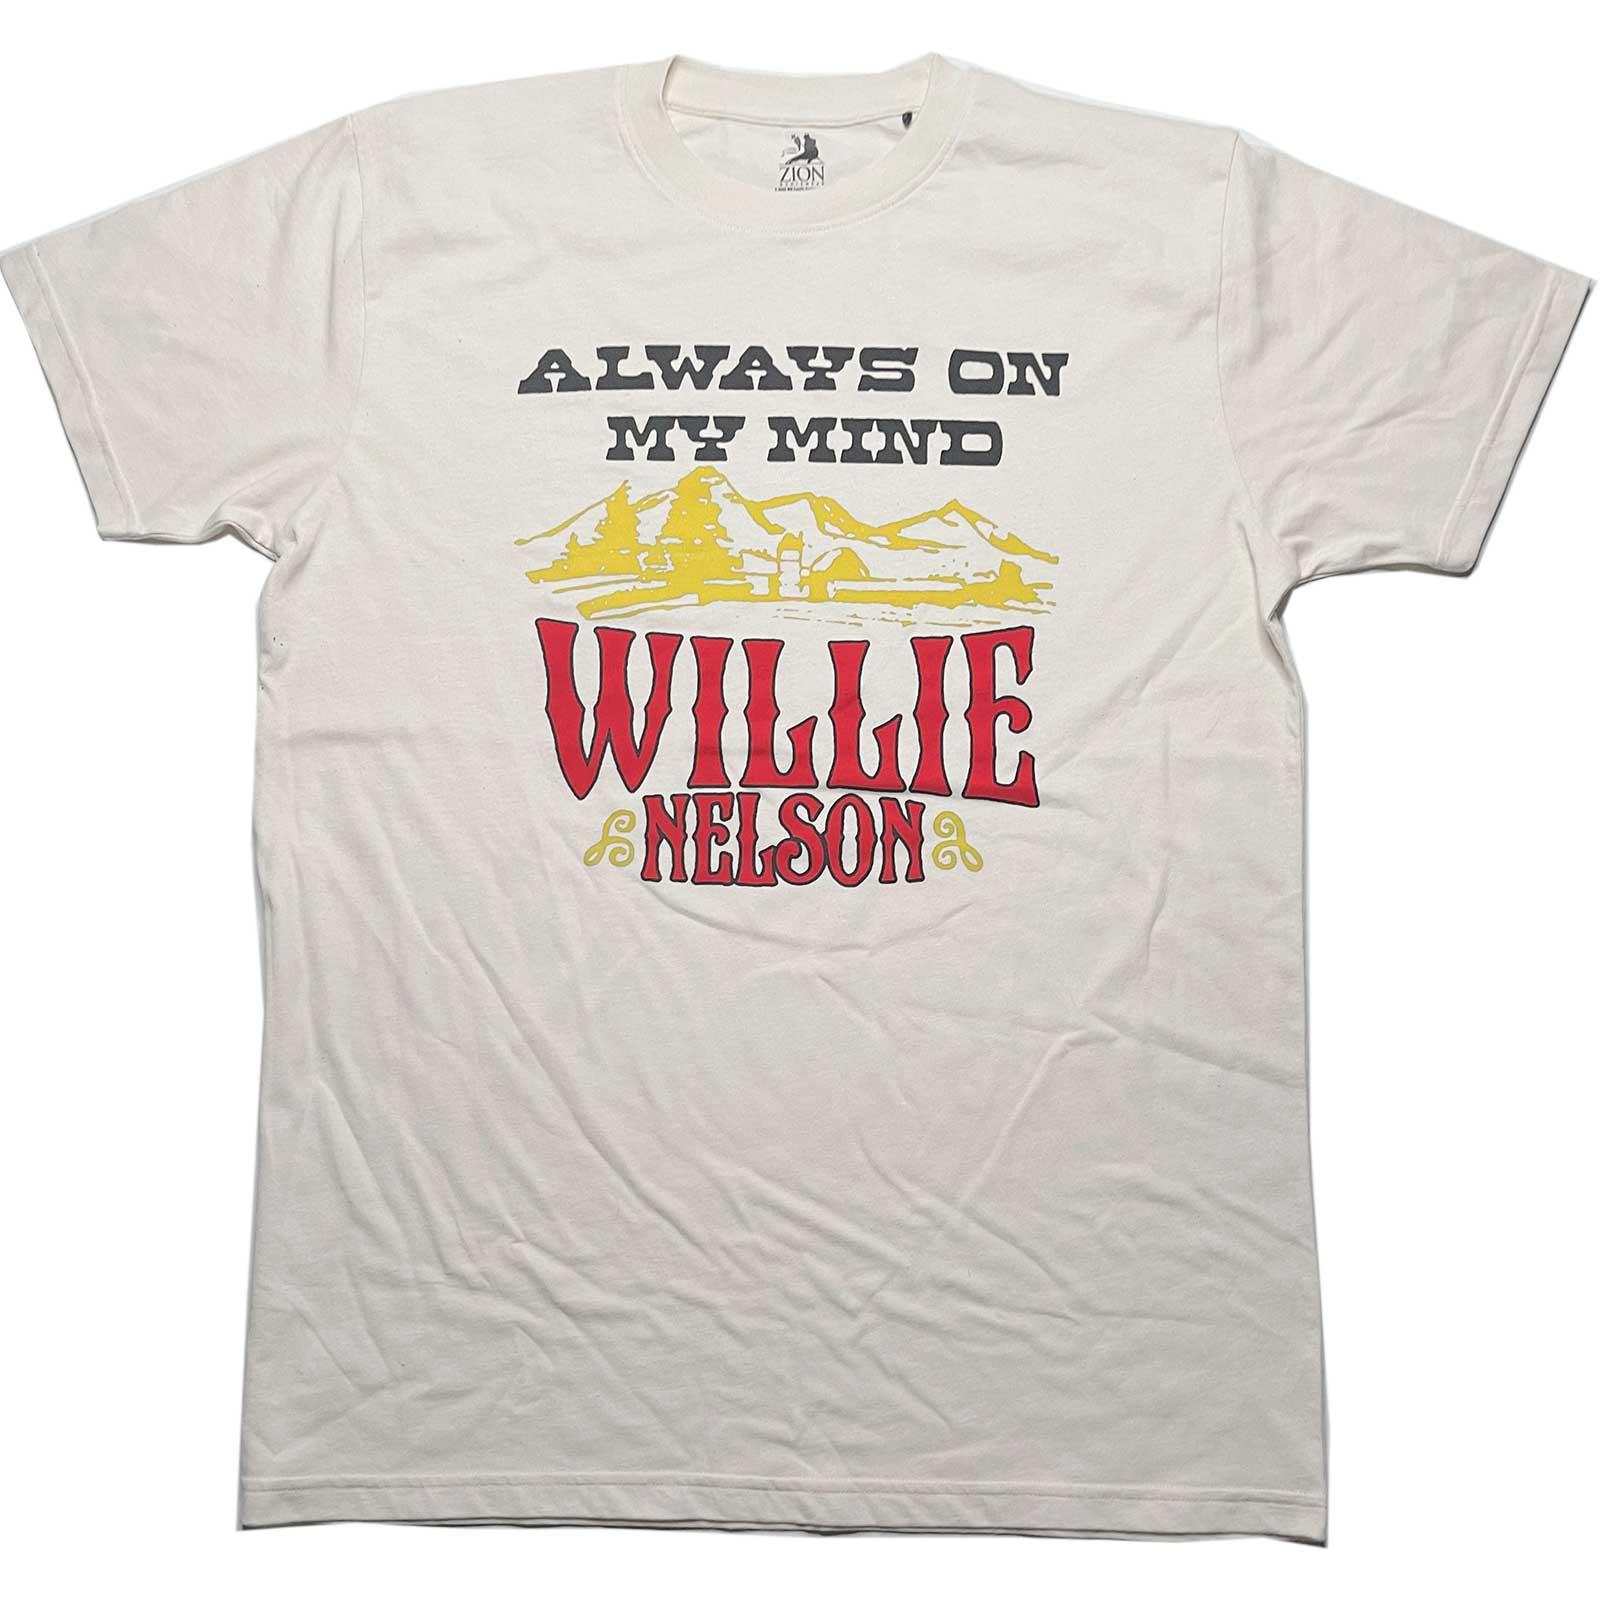 (ウィリー・ネルソン) Willie Nelson オフィシャル商品 ユニセックス Always On My Mind Tシャツ 半袖 トップス 【海外通販】